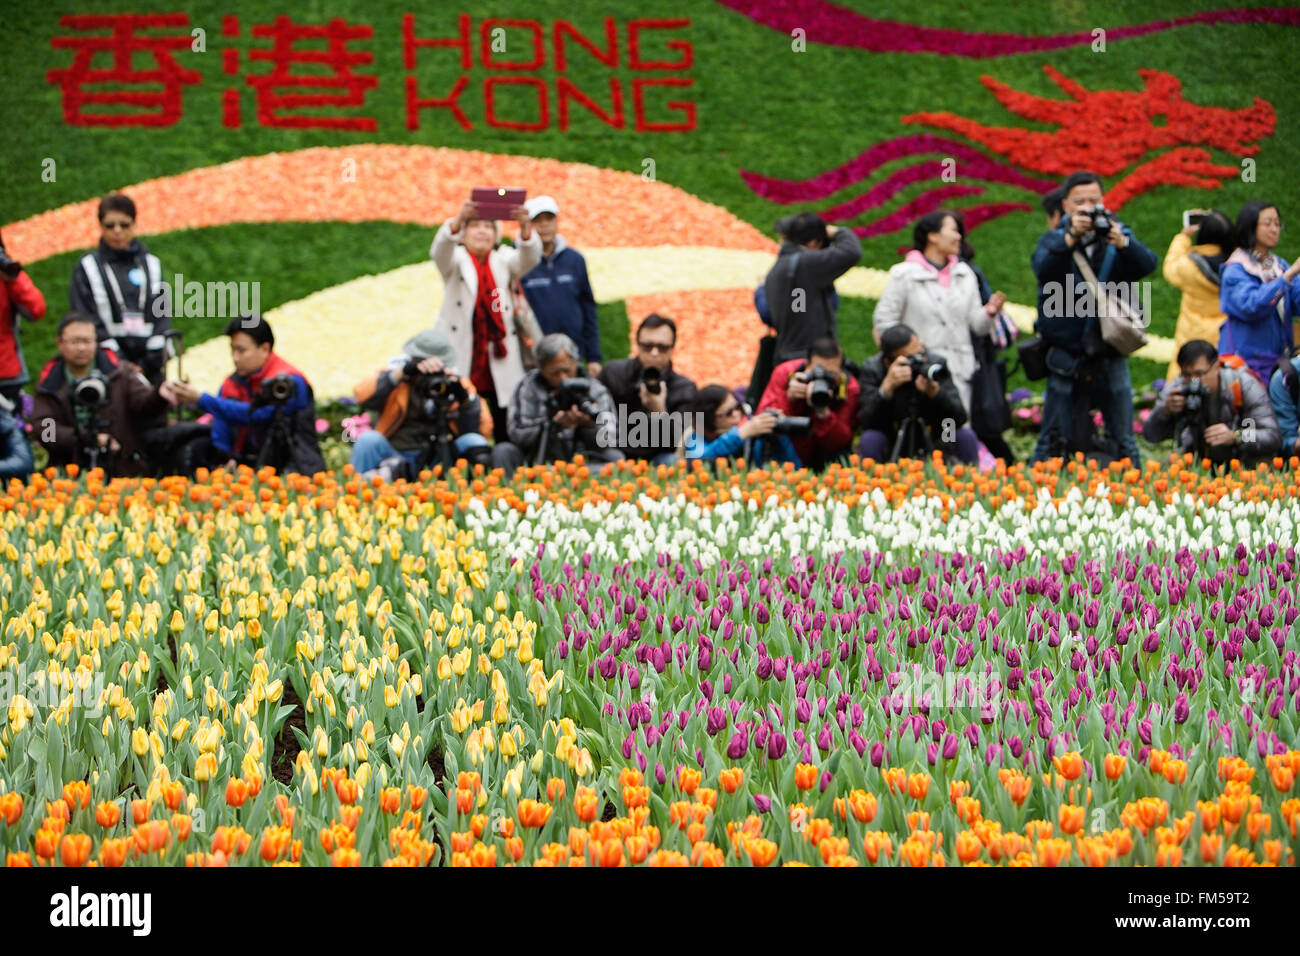 Hong Kong, China. 11th Mar, 2016. Visitors take photos of flowers during the Hong Kong Flower Exhibition at the Victoria Park in Hong Kong, south China, March 11, 2016. © Ng Wing Kin/Xinhua/Alamy Live News Stock Photo